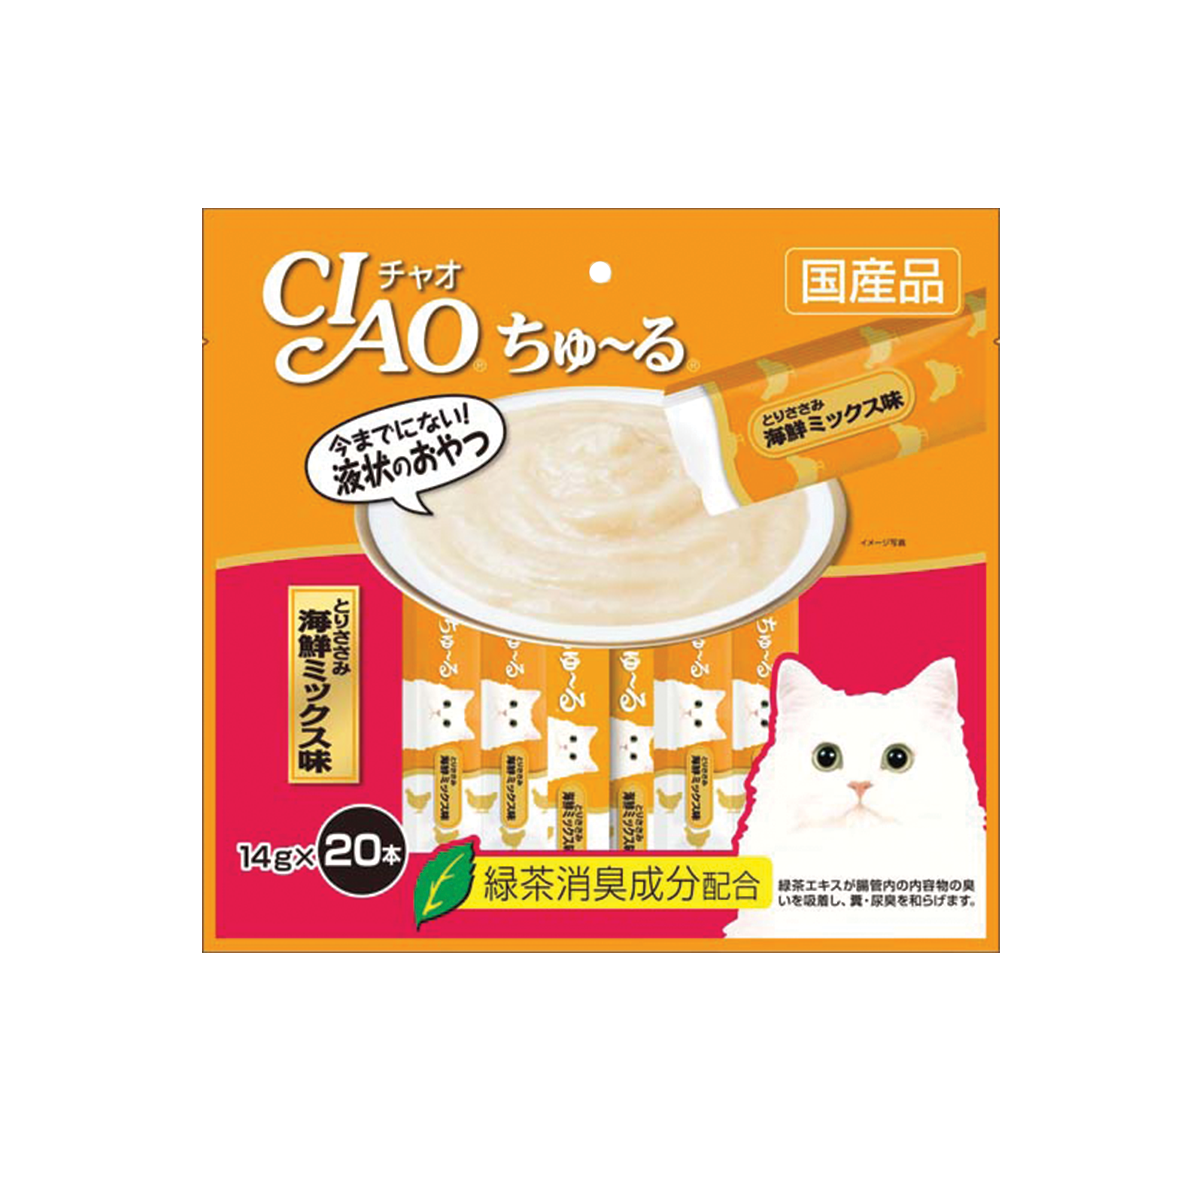 CIAO Churu Chicken Fillet Scallop Flavor เชาว์ ชูหรุ ขนมแมวเลีย รสเนื้อสันในไก่และหอยเชลล์ ขนาด 14 กรัม (20 ชิ้น)